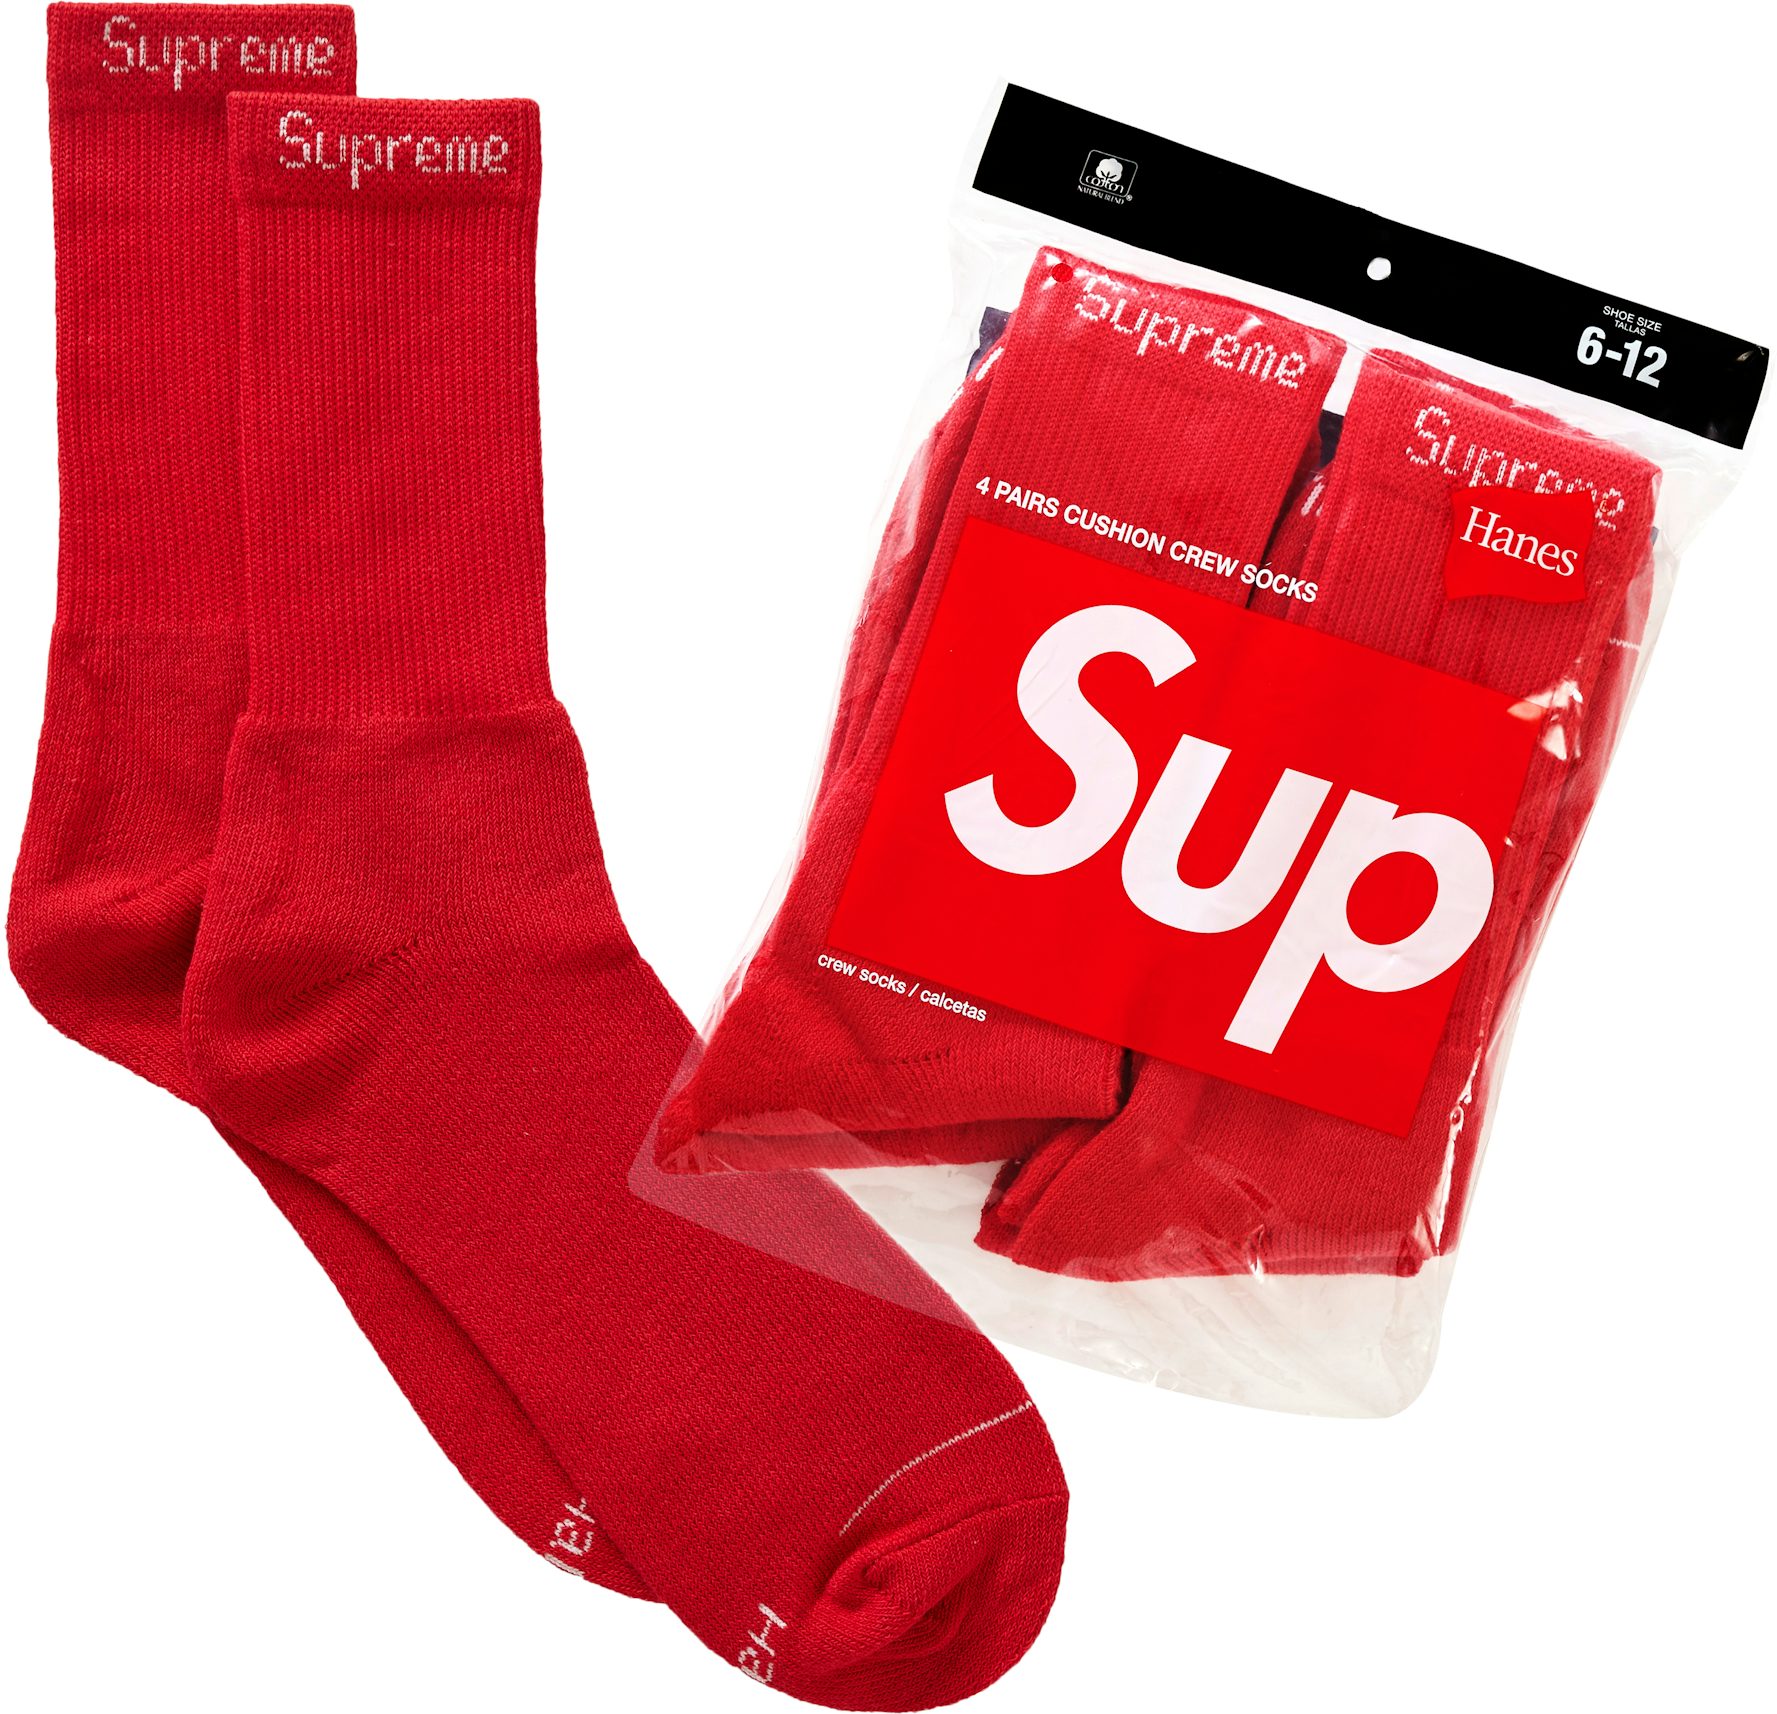 supreme socks louis